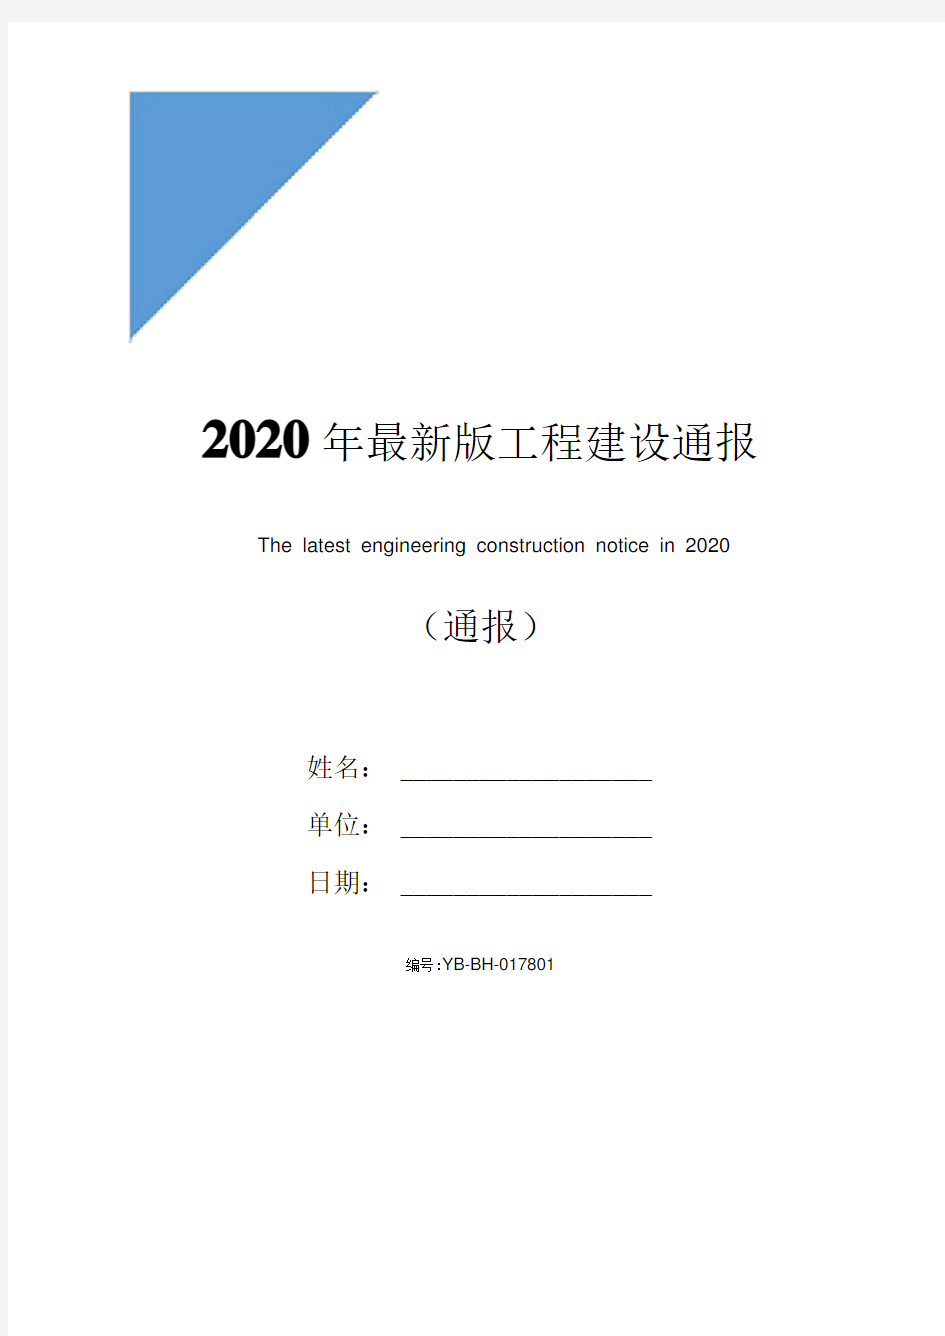 2020年最新版工程建设通报